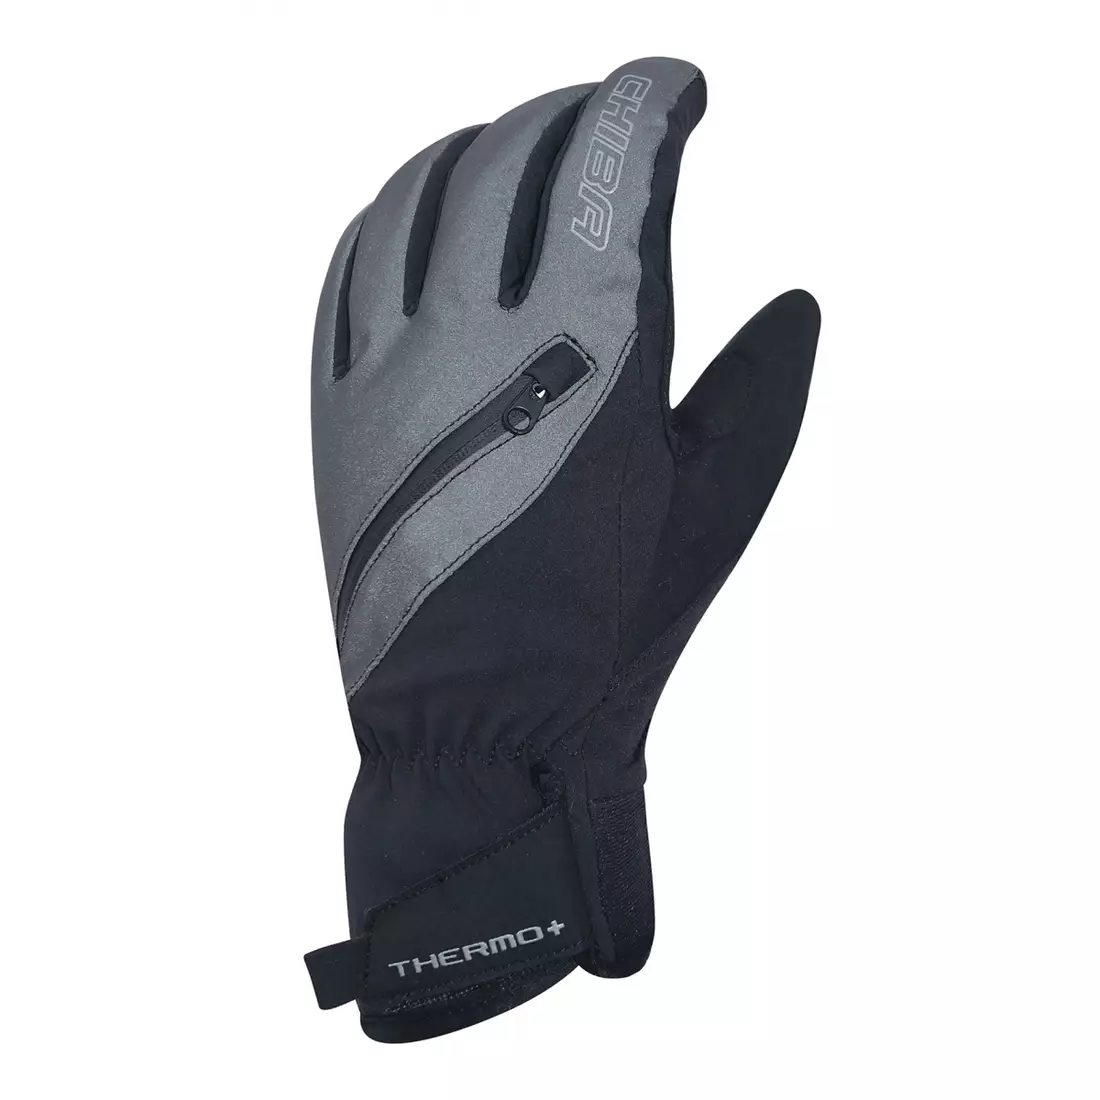 CHIBA THERMO PLUS 3110120C zimné rukavice, čierne